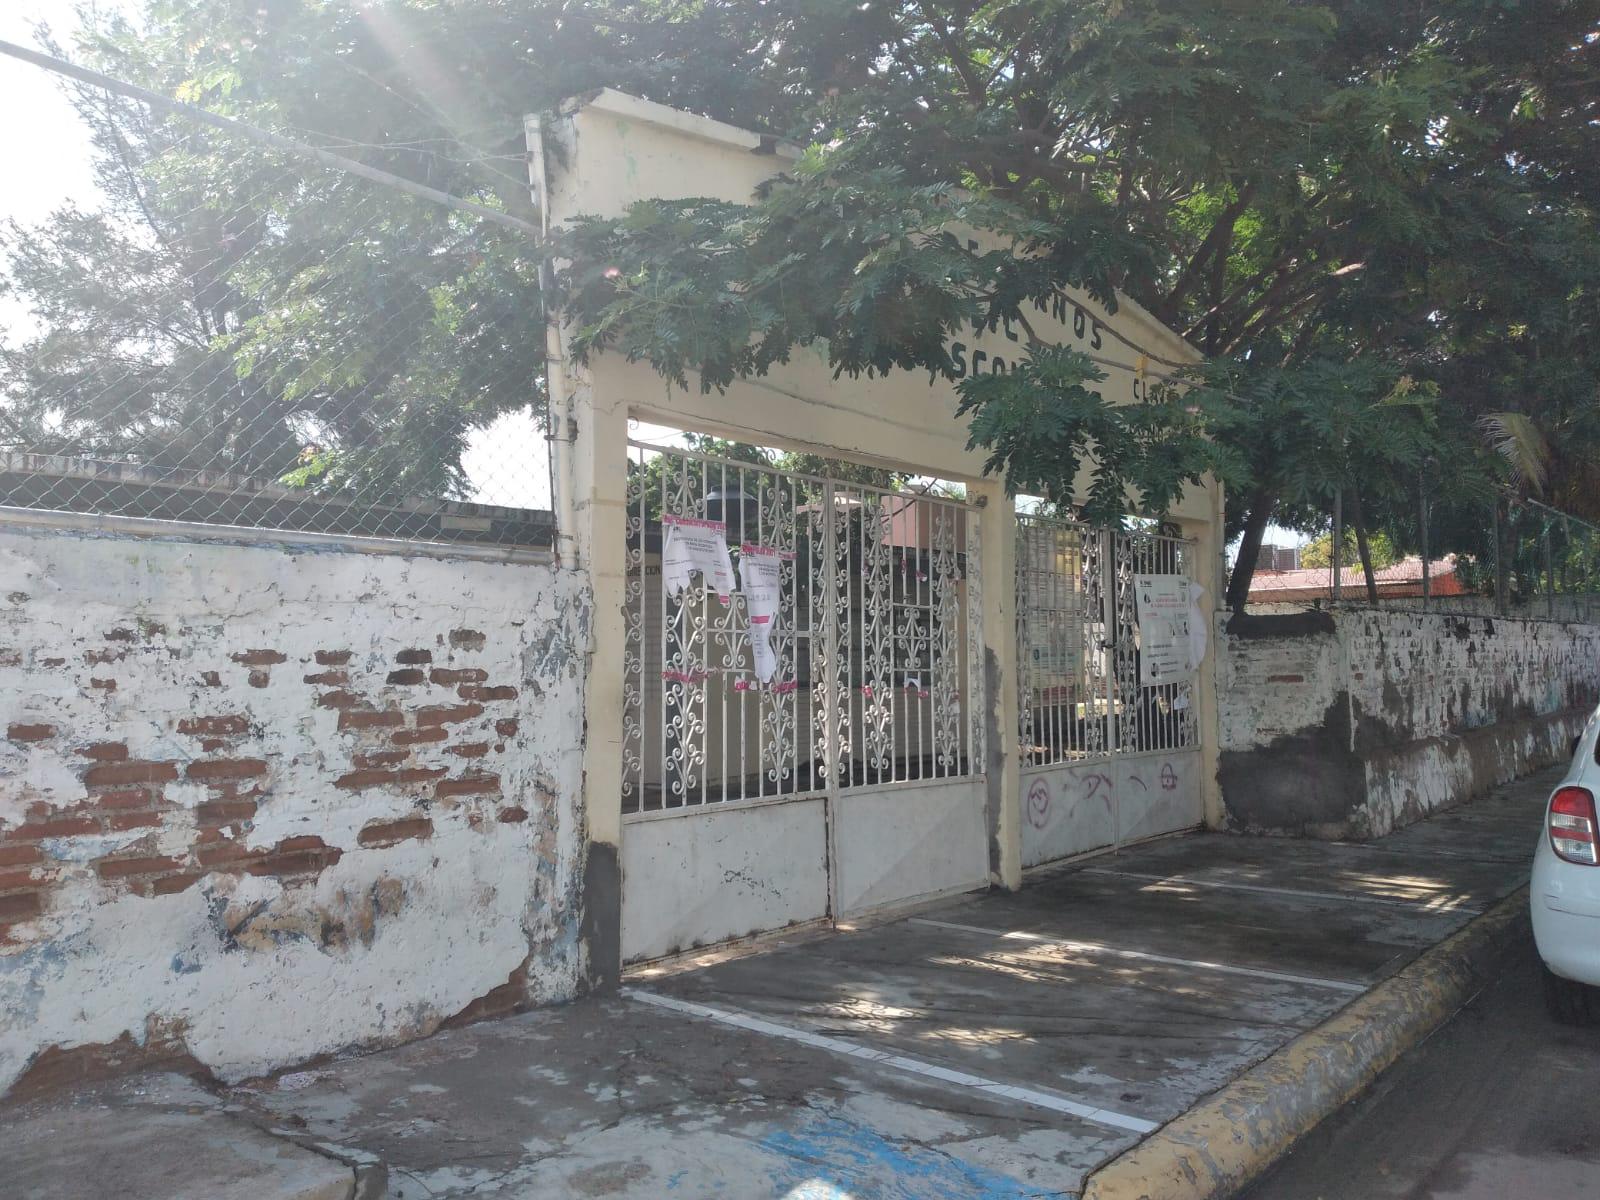 $!Dudas e incertidumbre presentan escuelas de Mazatlán por el regreso a las aulas